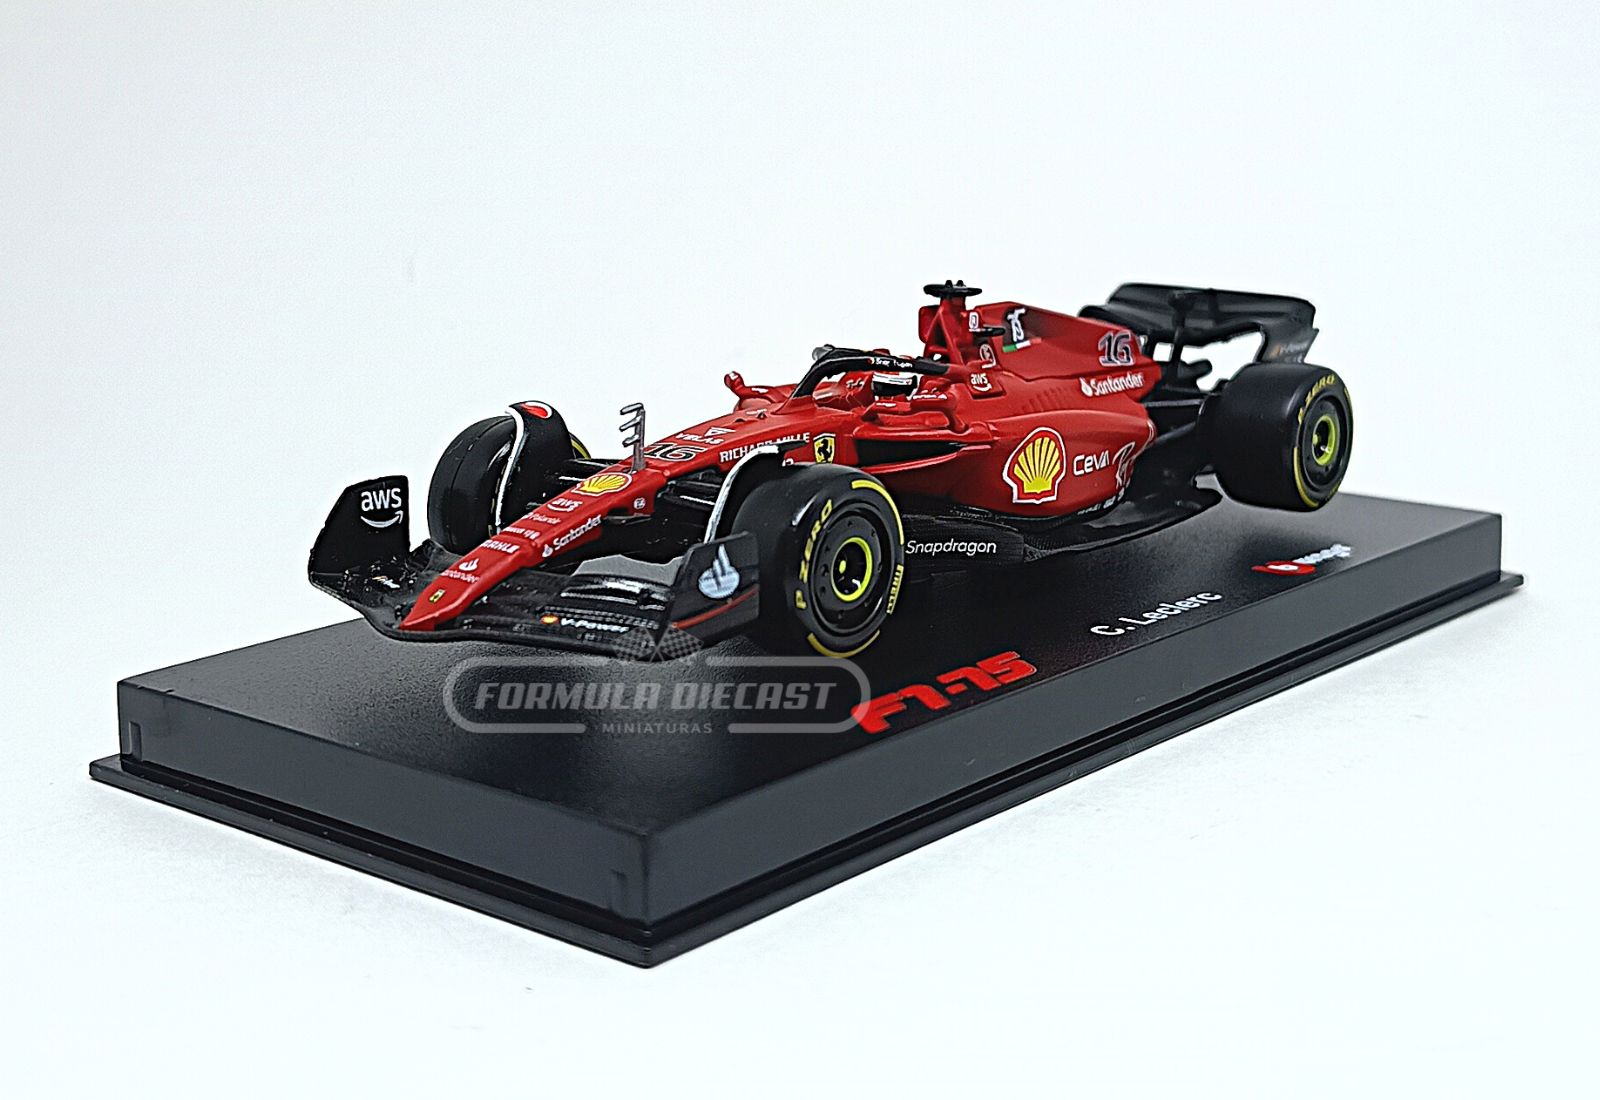 Miniatura de carro Ferrari F1-75 Charles Leclerc, F1 2022, escala 1:43, marca Bburago